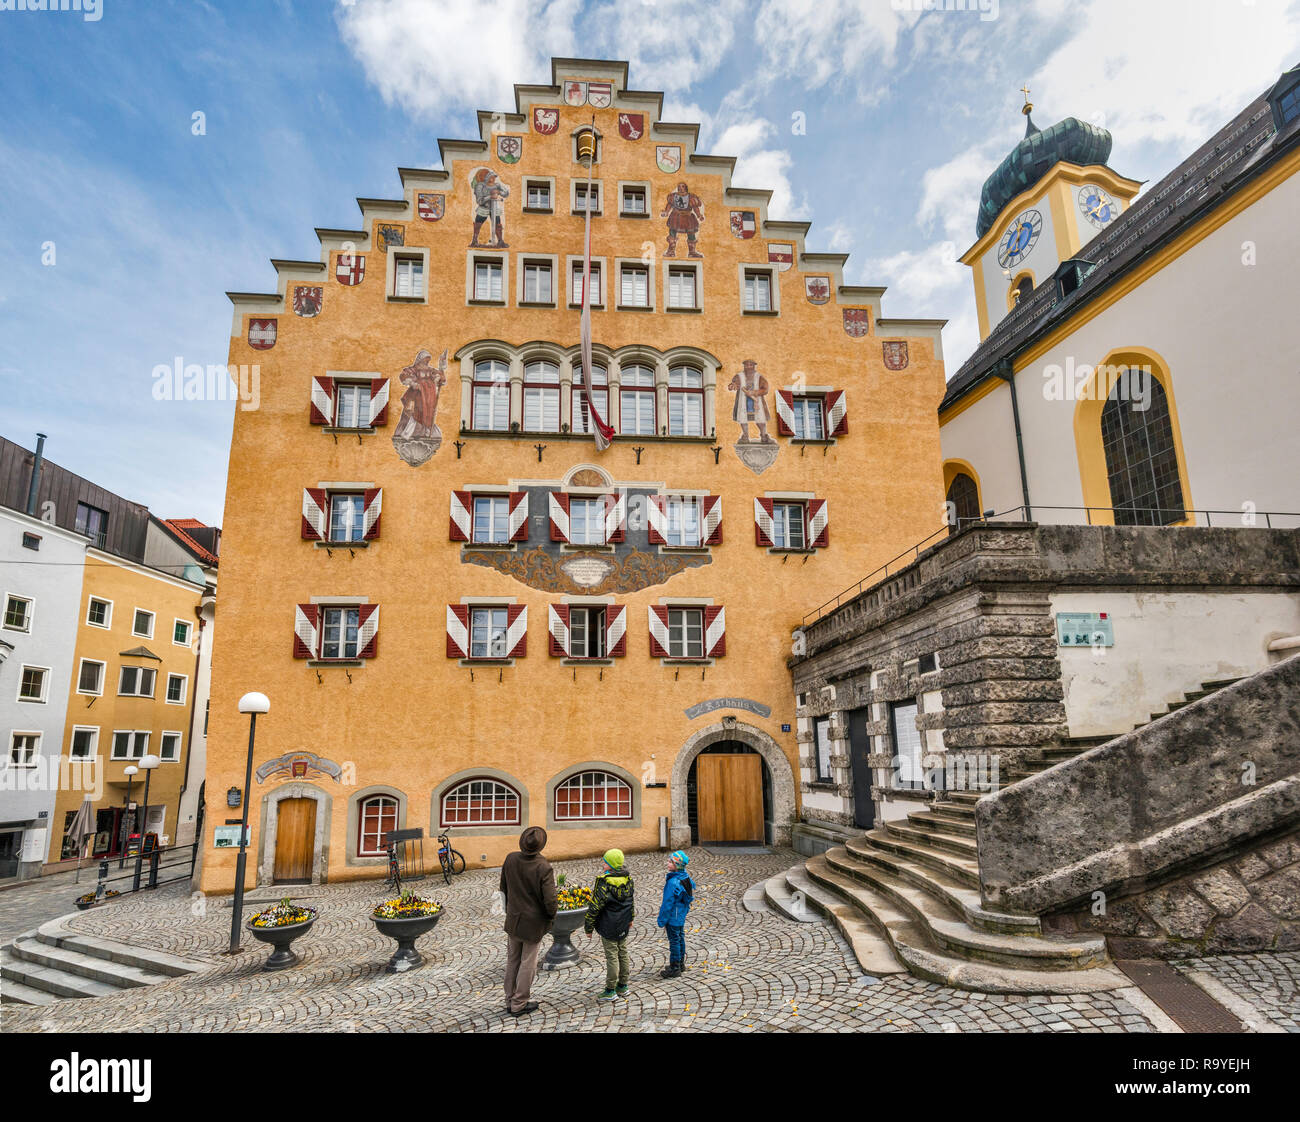 Façade pignon de l'hôtel de ville (Rathaus), à Unterer Stadtplatz, Altstadt (vieille ville) dans le centre de Kufstein, Tyrol, Autriche Banque D'Images